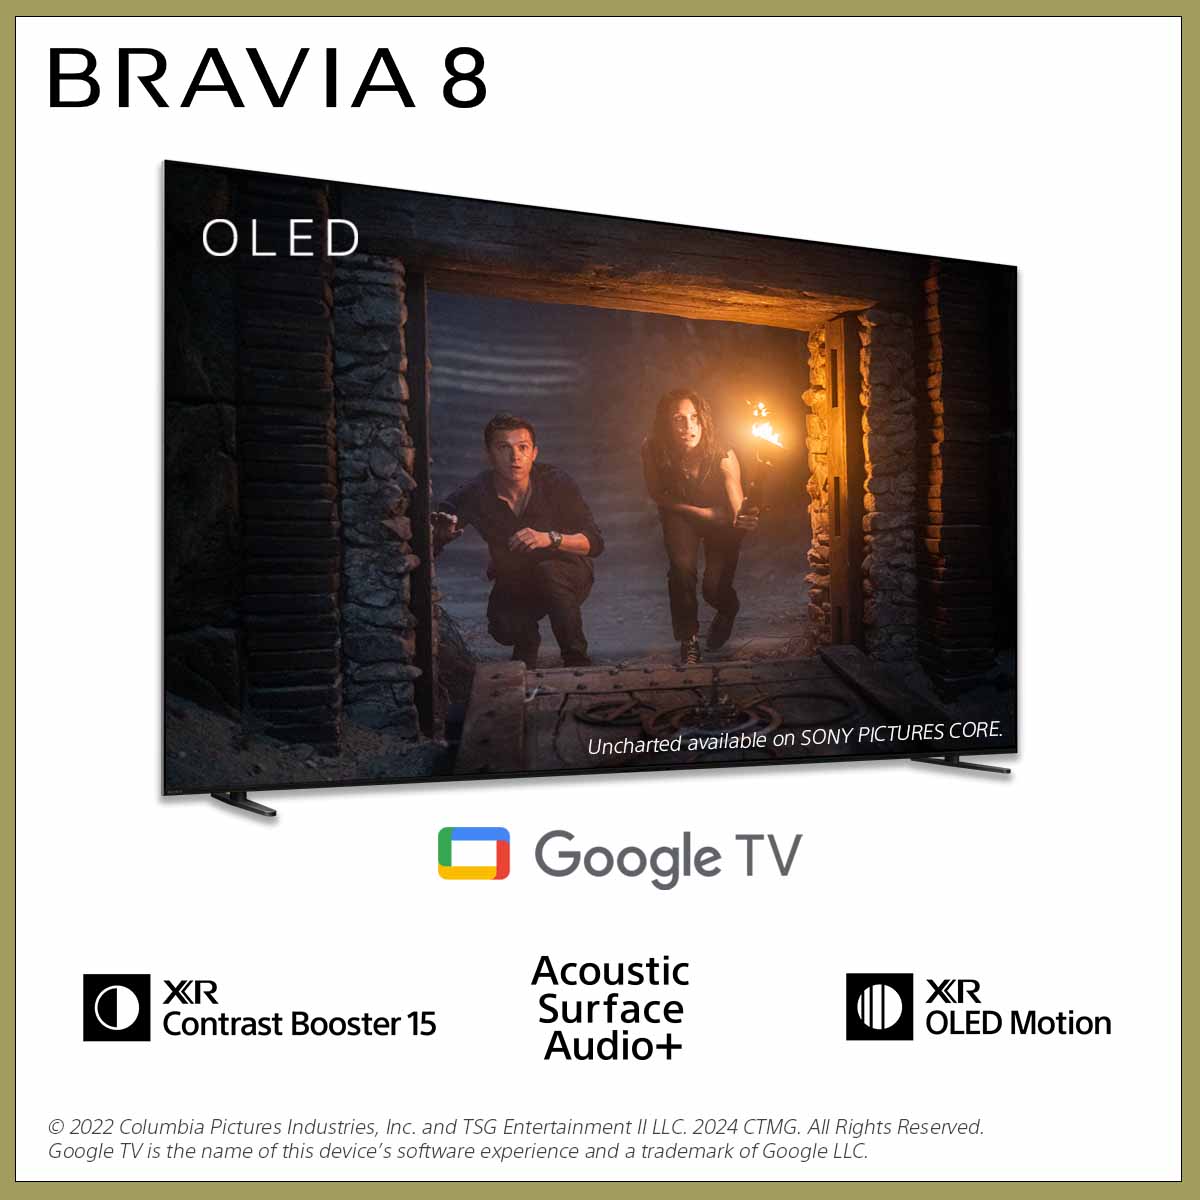 BRAVIA 8 | K-65XR80 | XR Processor | OLED | 4K Ultra HD | Dải tần nhạy sáng cao (HDR) | Smart TV (Google TV)